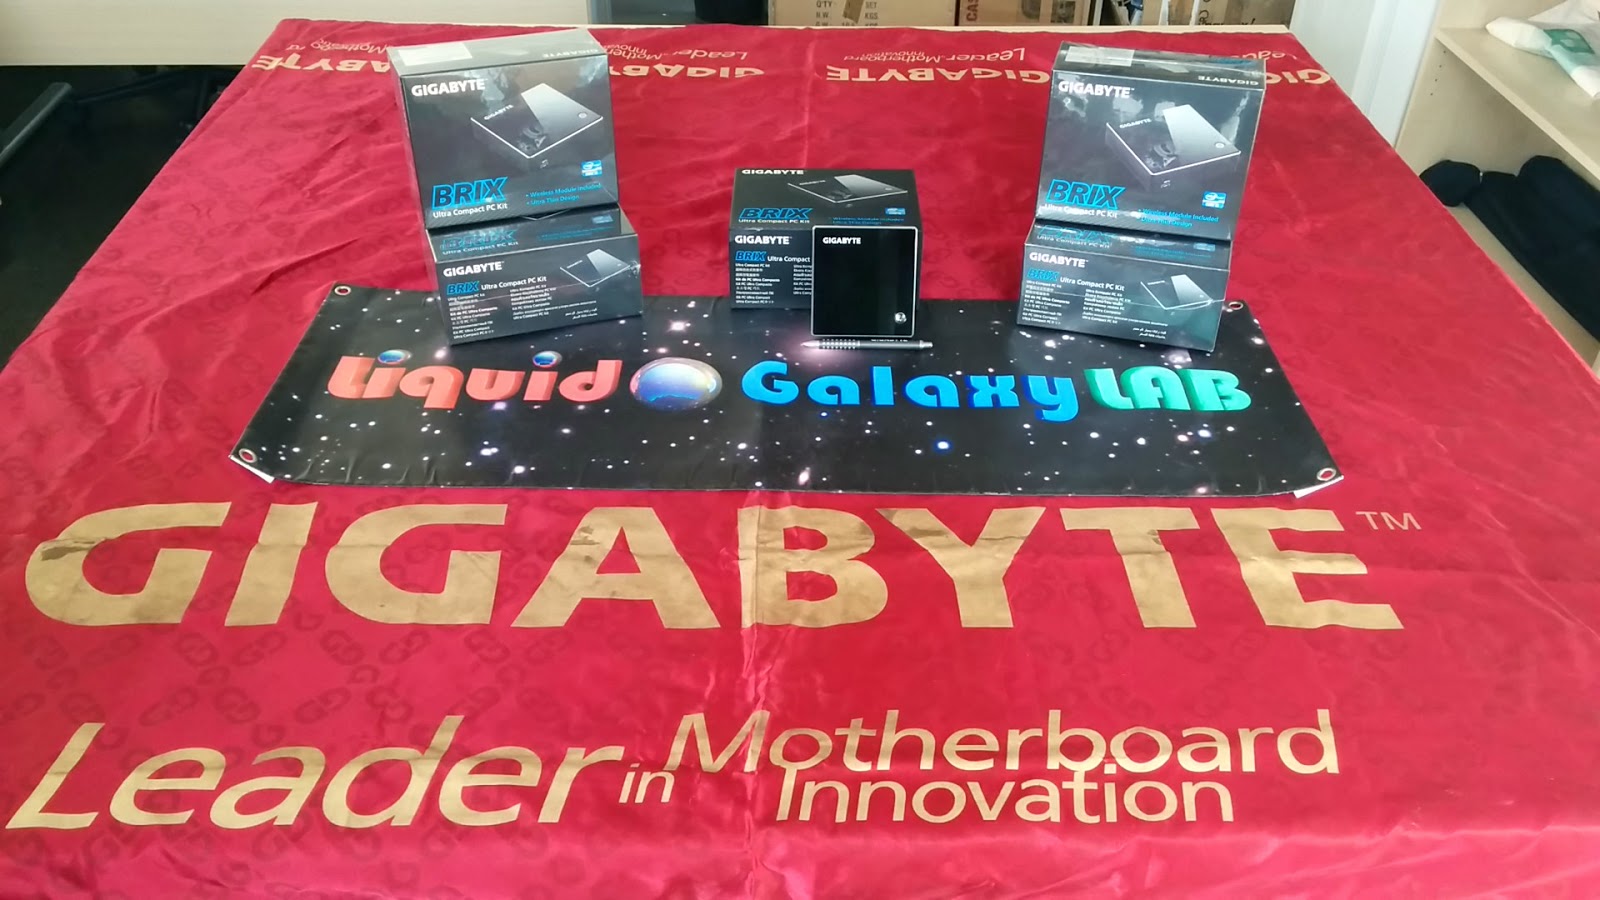  Llegaron los espléndidos micro PCs BRIX de @GigabyteSpain para el nuevo Moving #LiquidGalaxy 2 | G-LiquidGalaxy g-liquidgalaxy.com